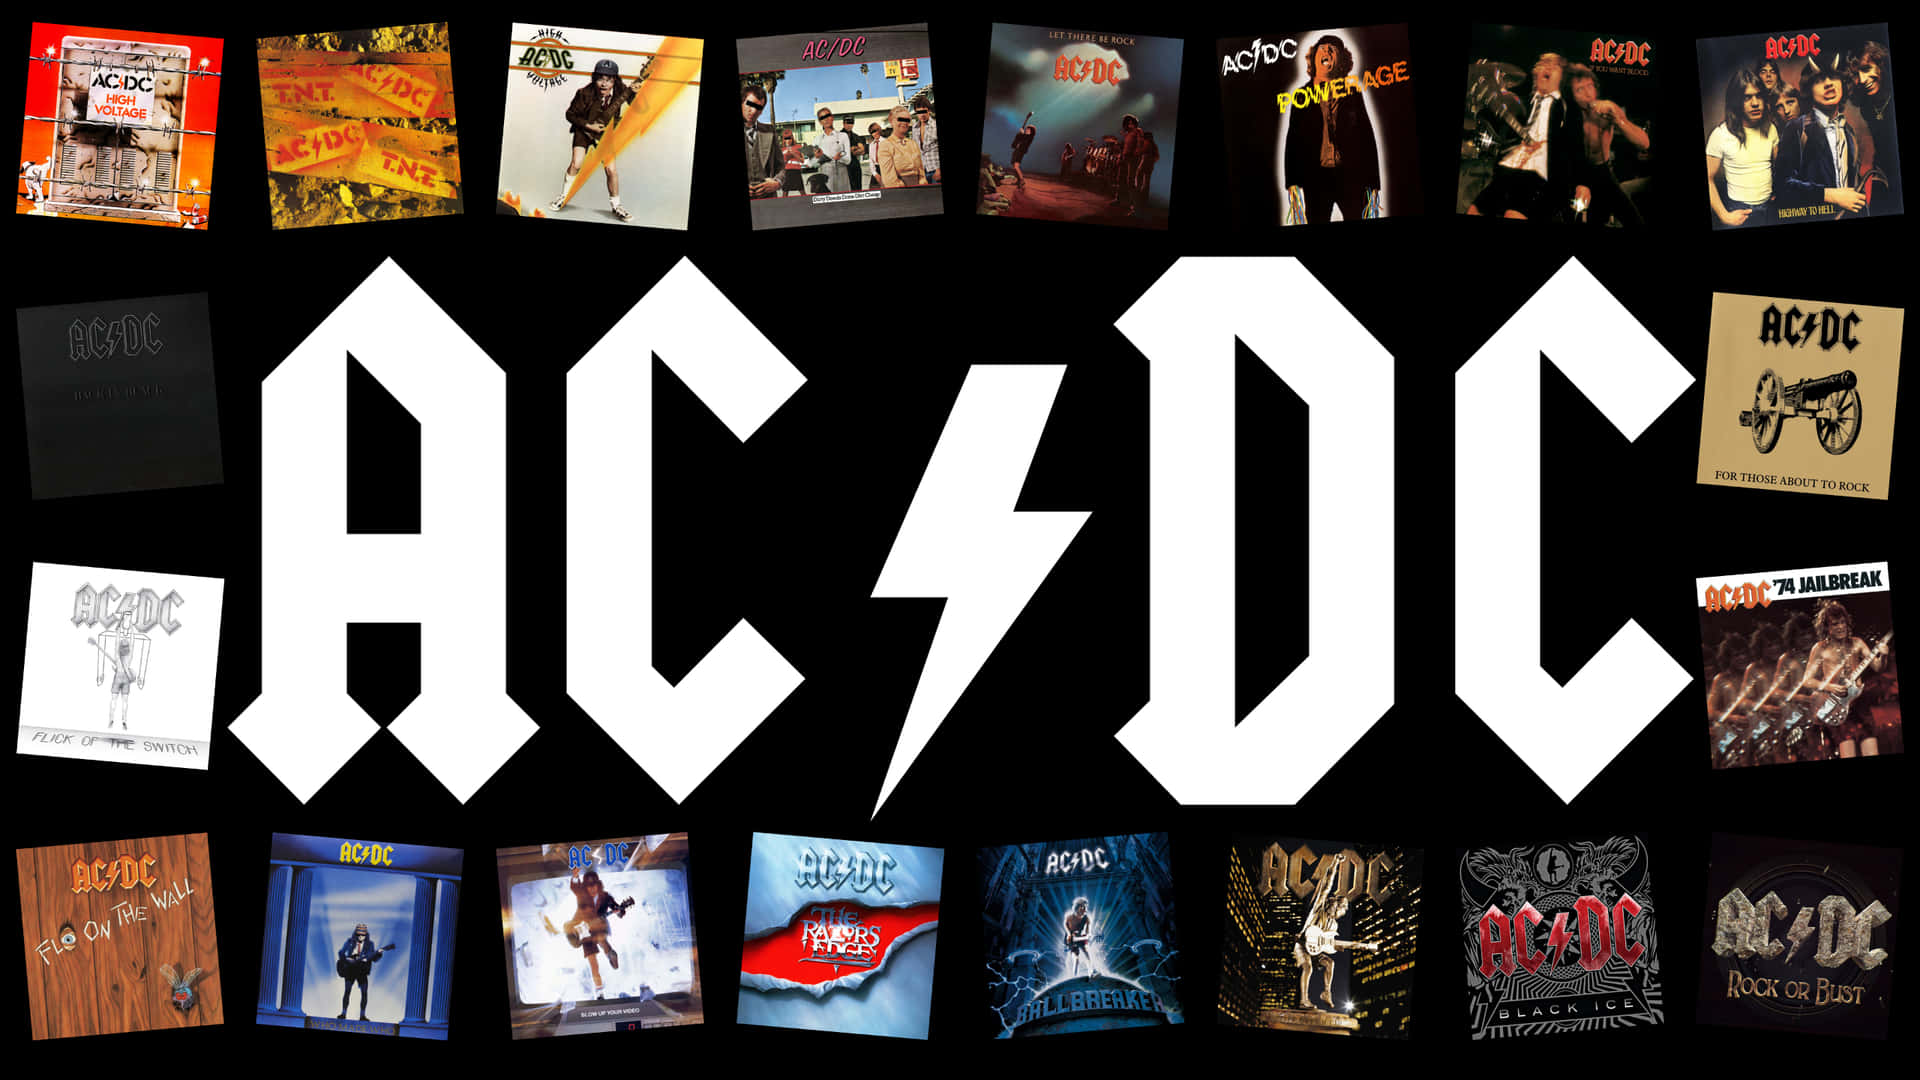 Caption: The Legends Of Rock - Ac/dc On Tour